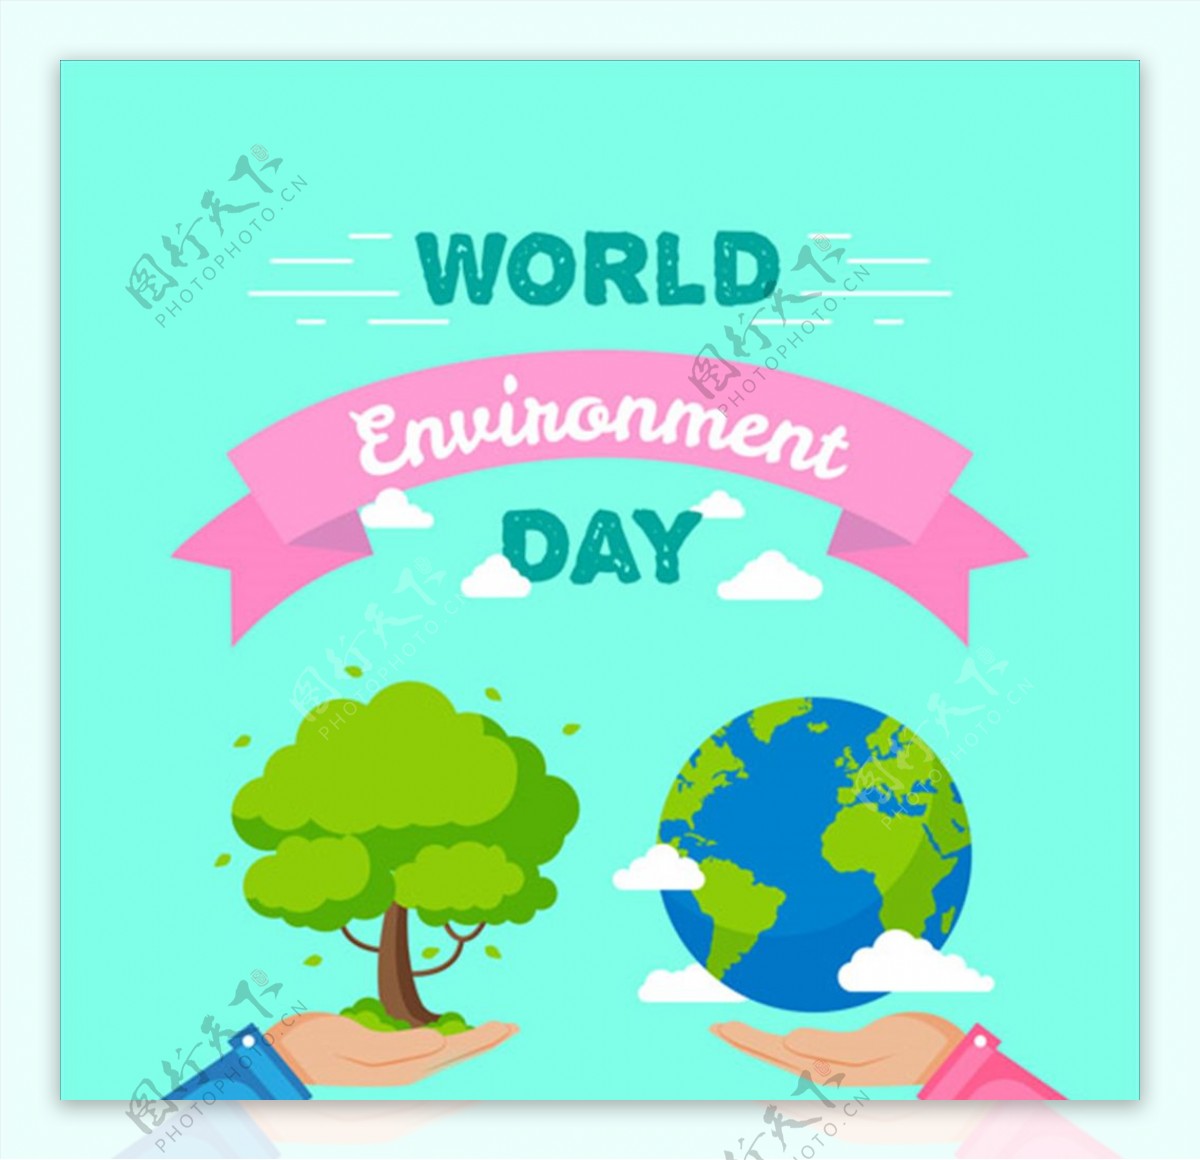 世界环境保护日粉红丝带海报